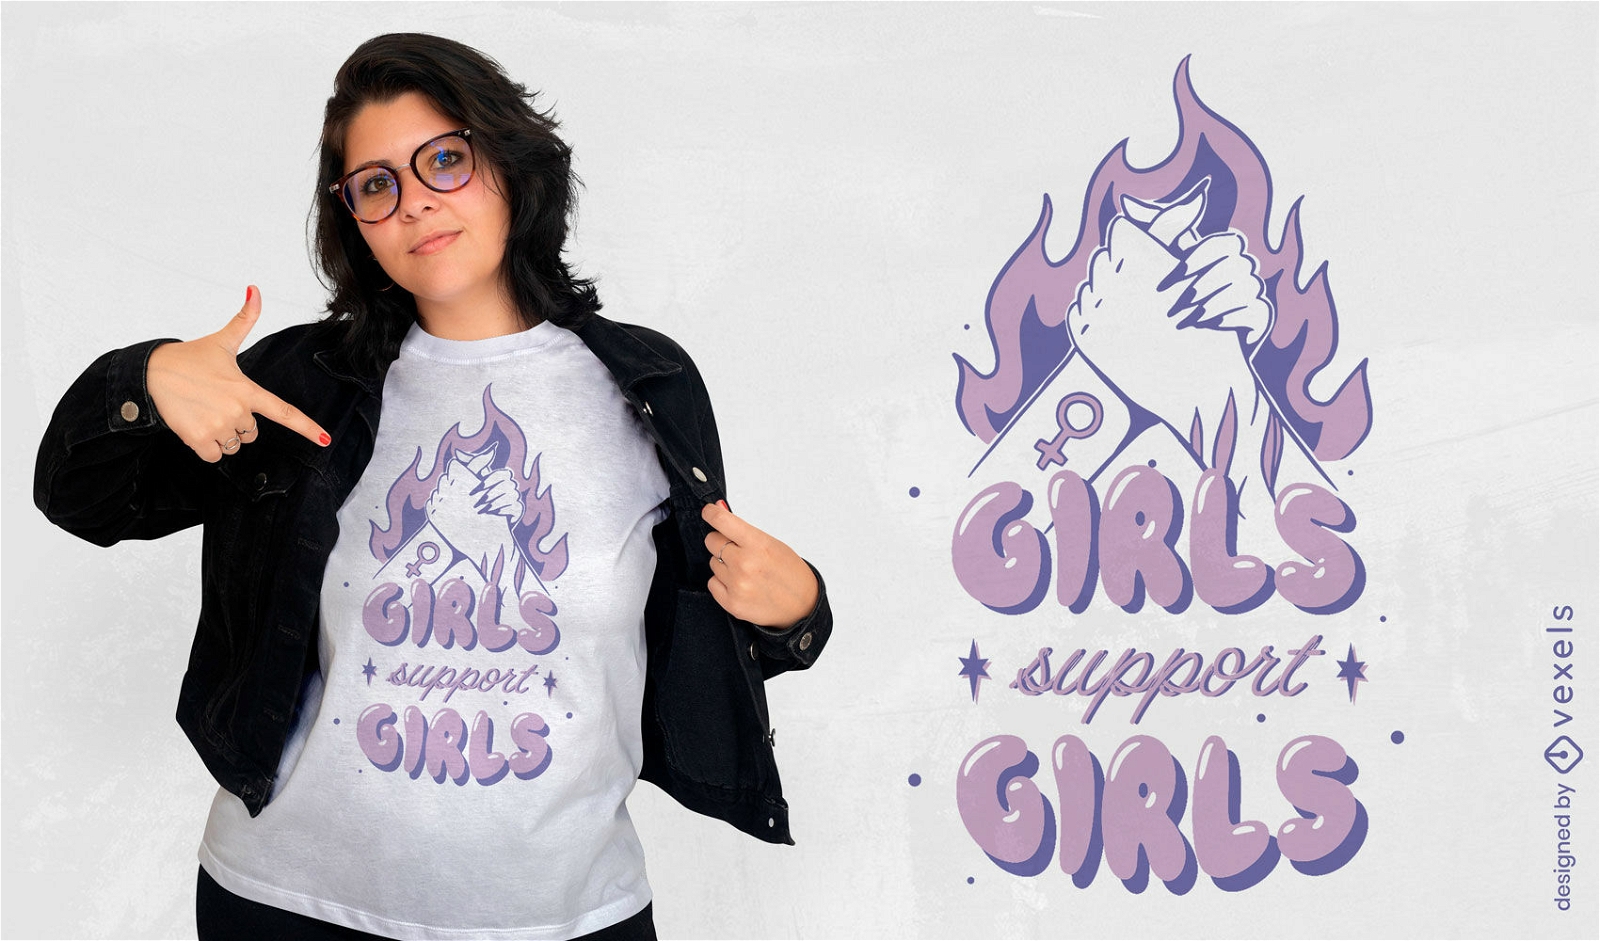 Girls support girls feminism t-shirt design